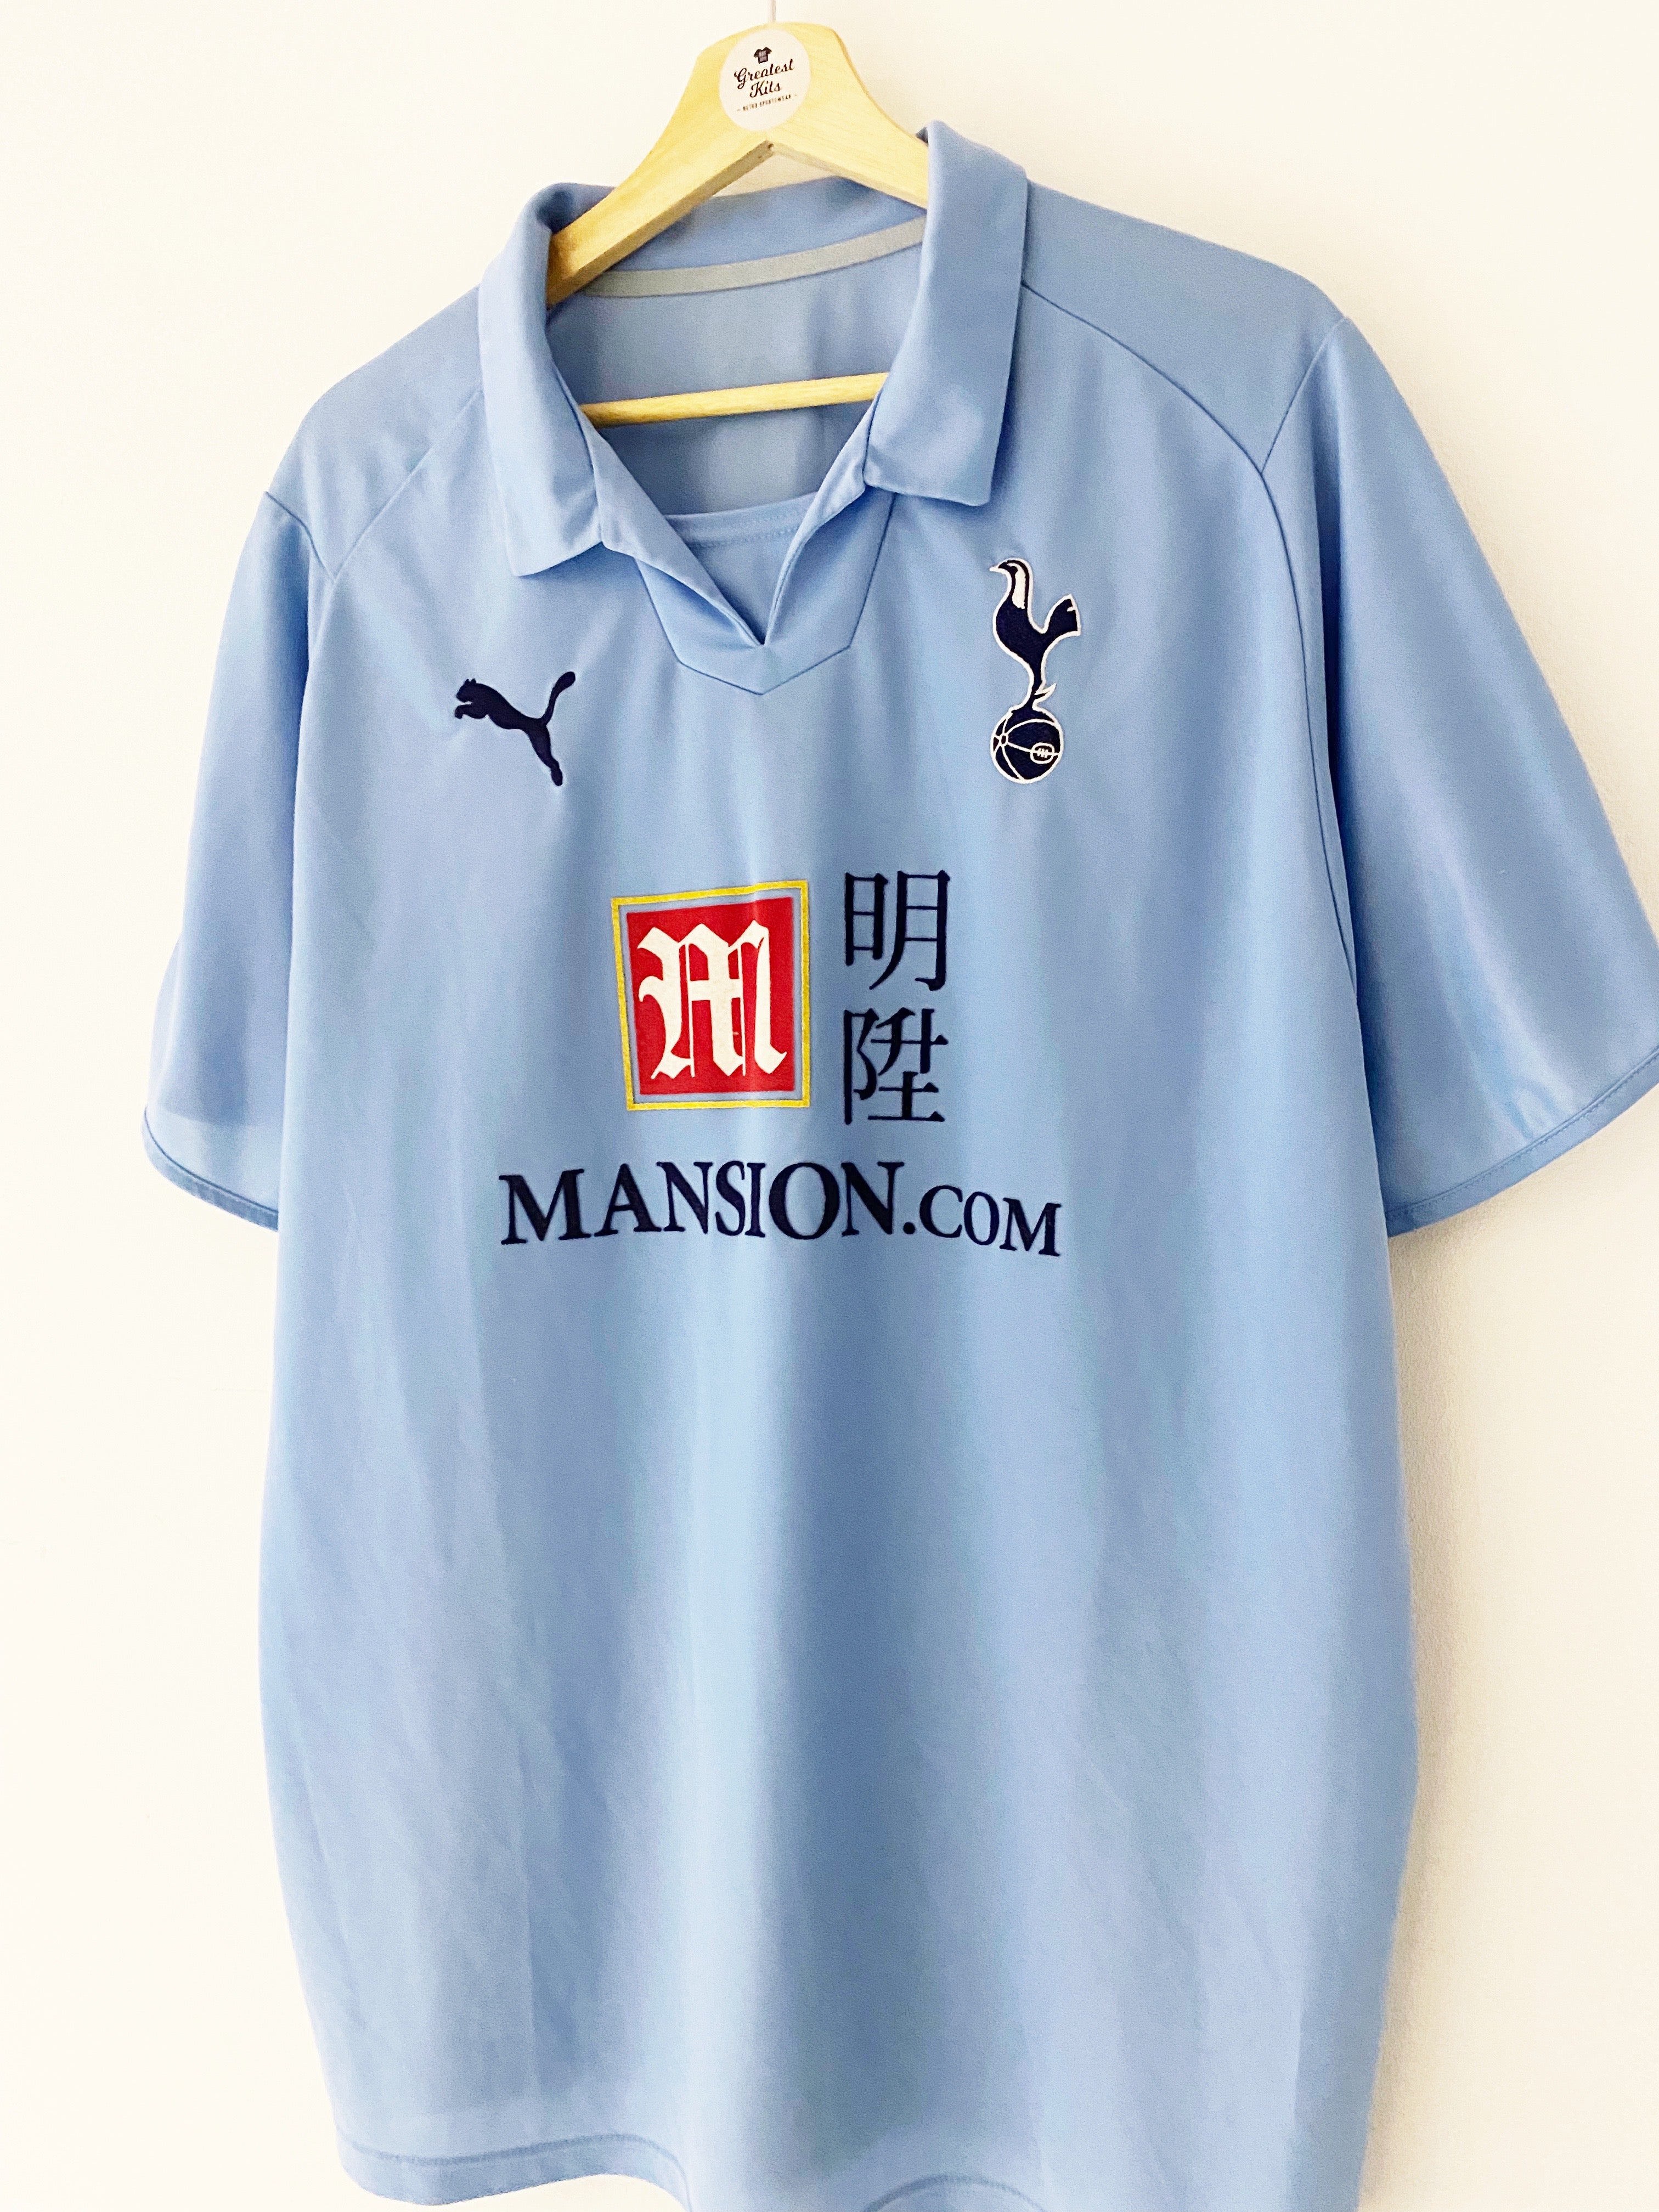 Tottenham Hotspur 2008-09 Away Kit